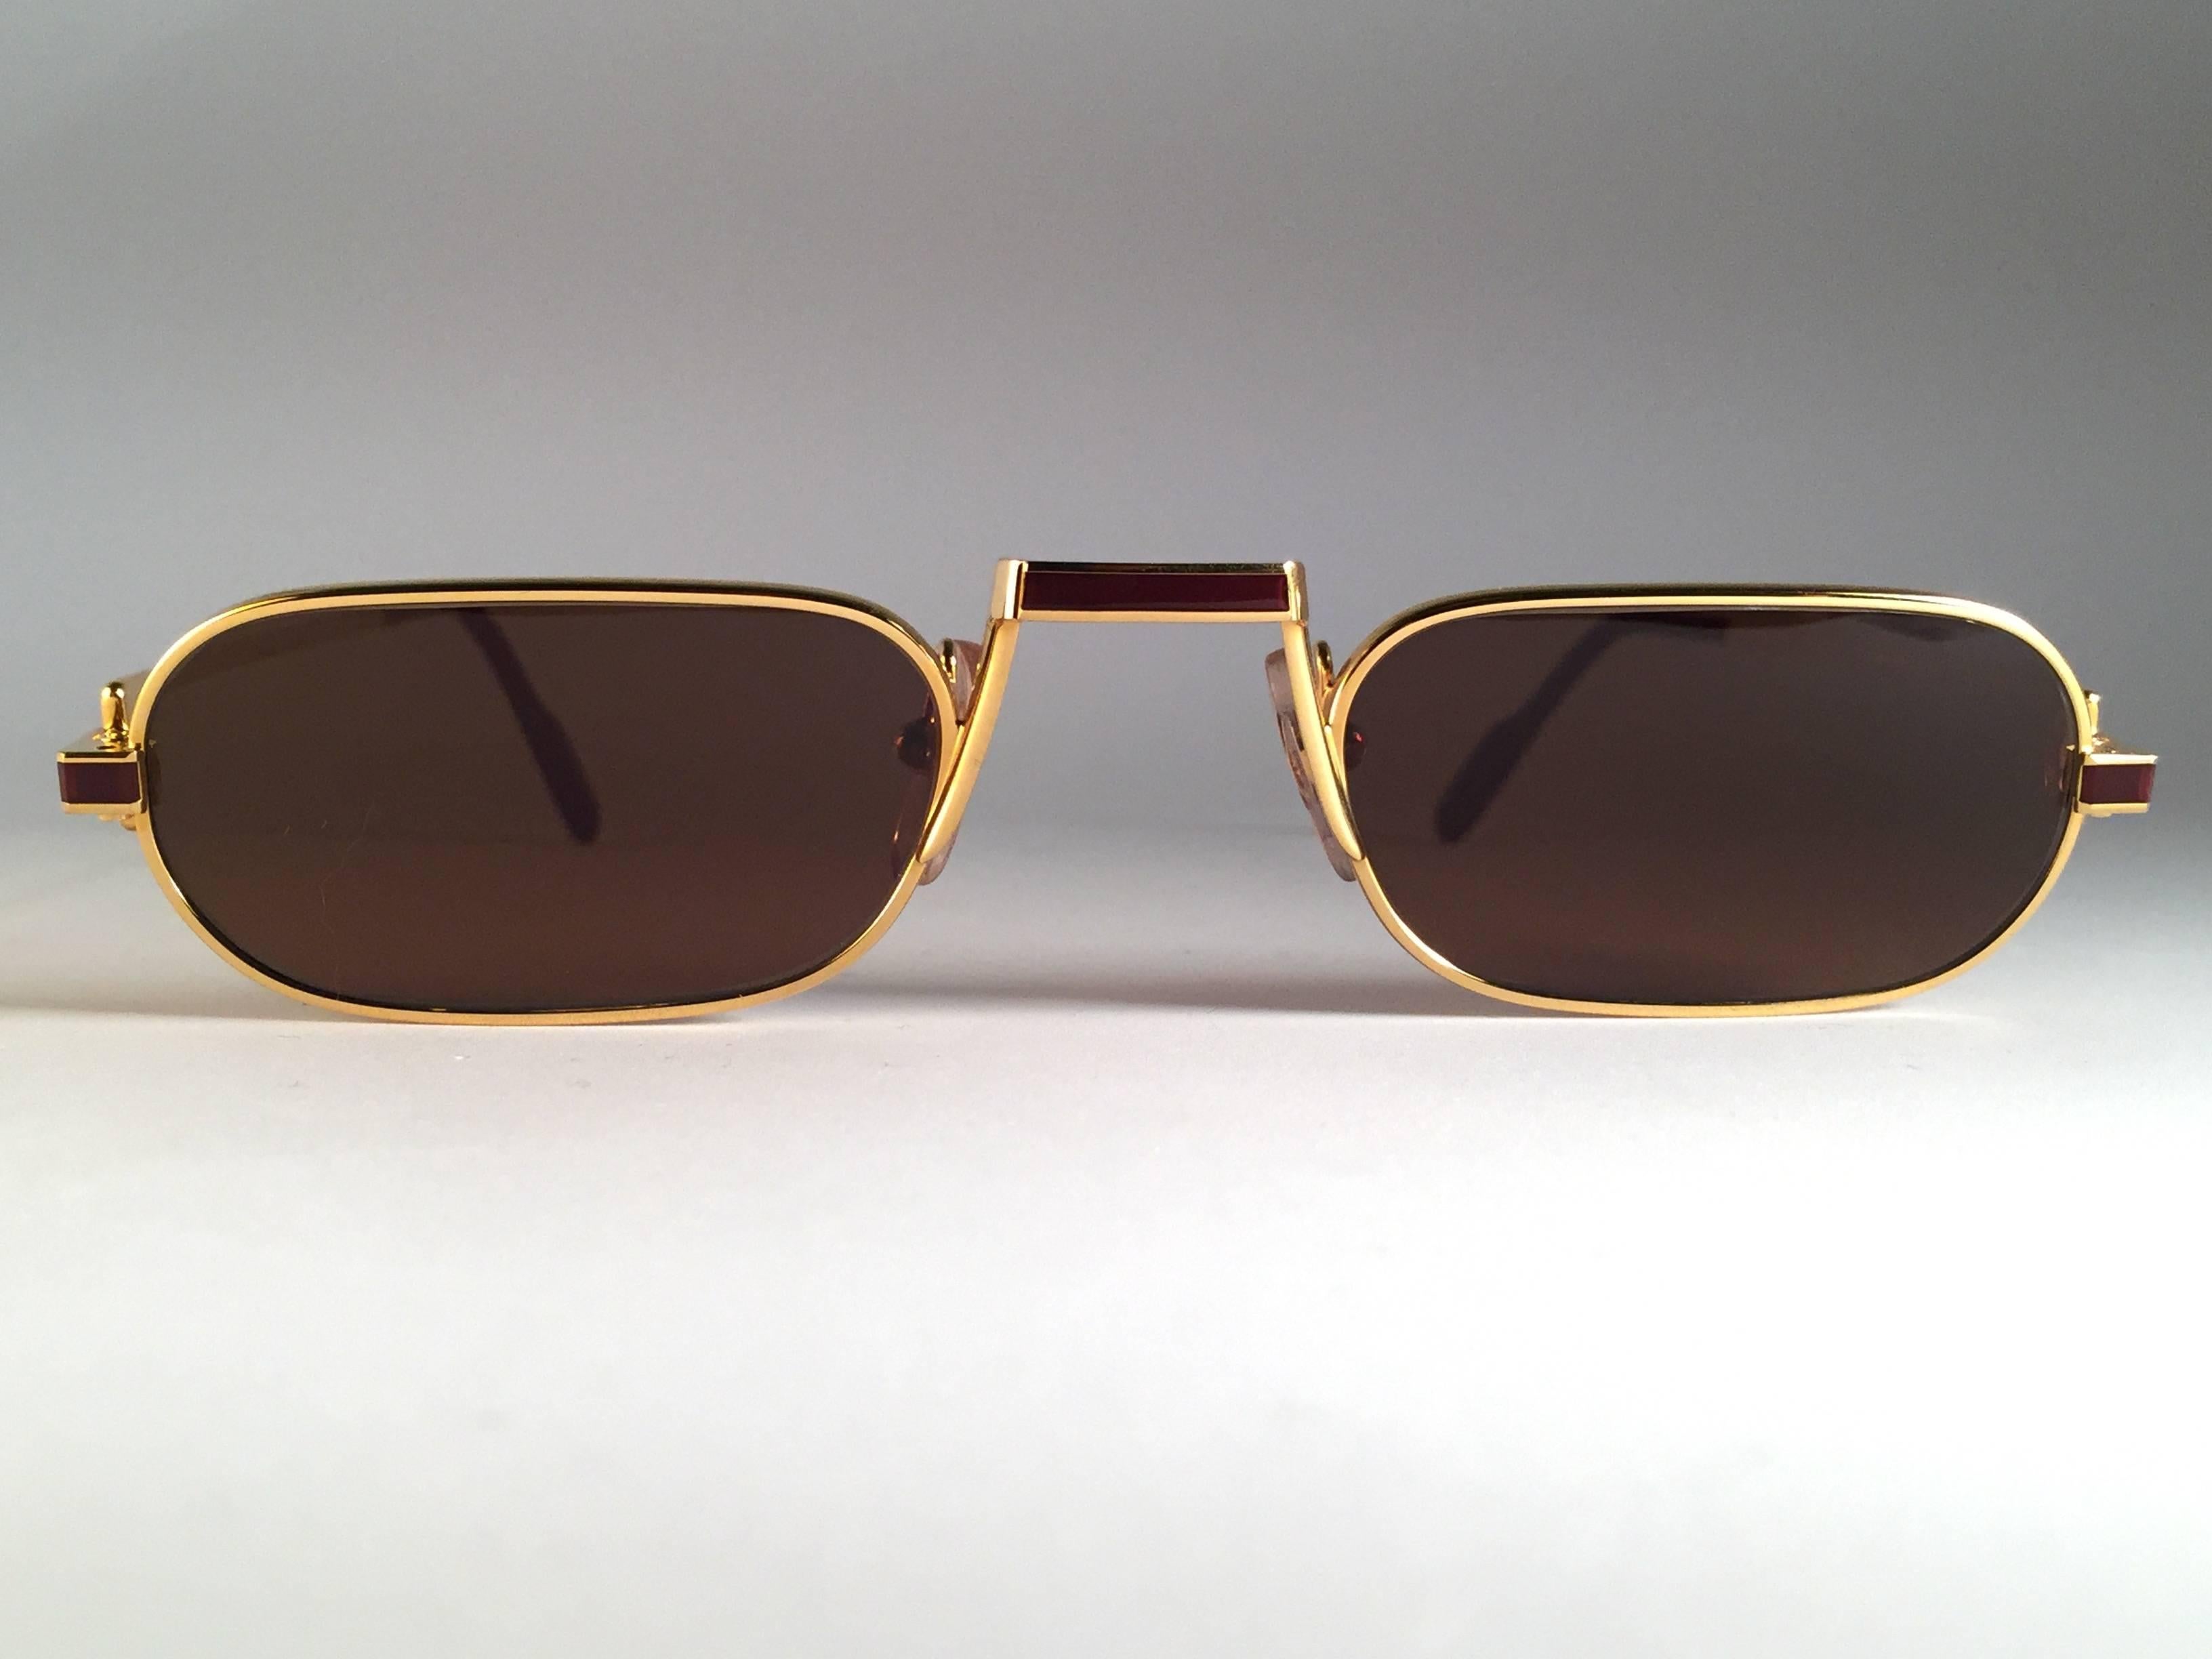 Original 1983 Cartier Demilune Cartier Laque De Chine Sonnenbrille mit neuen honigbraunen Gläsern. Sehr bequem als Lesebrille. Alle Markenzeichen. Rote Emaille mit goldenen Cartier-Zeichen auf den weinroten Ohrläppchen. Beide Arme tragen das C von